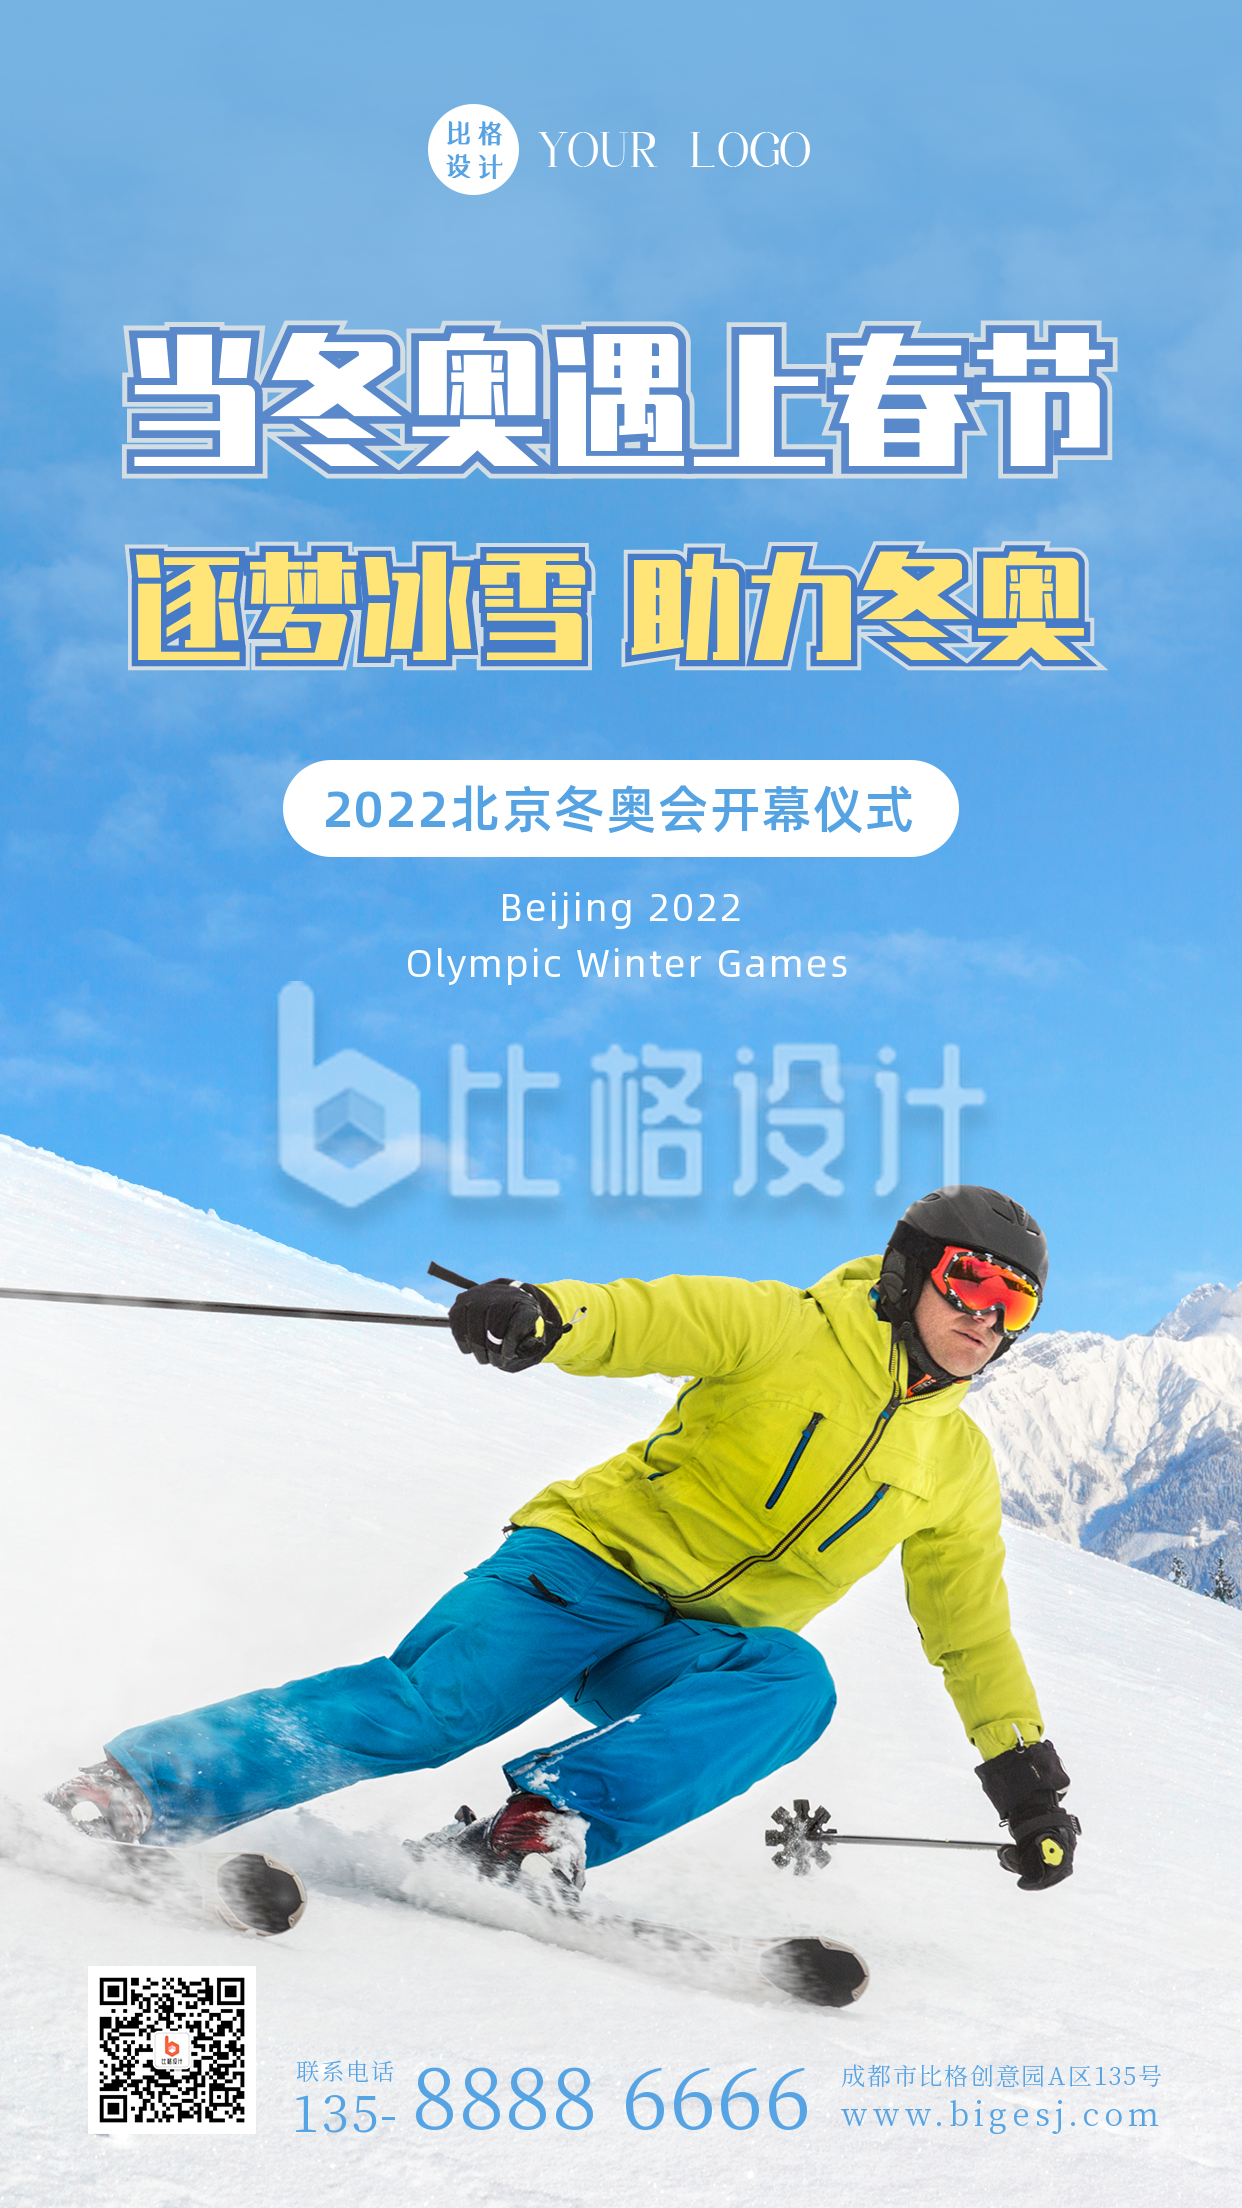 冬季奥运会滑雪运动实景手机海报